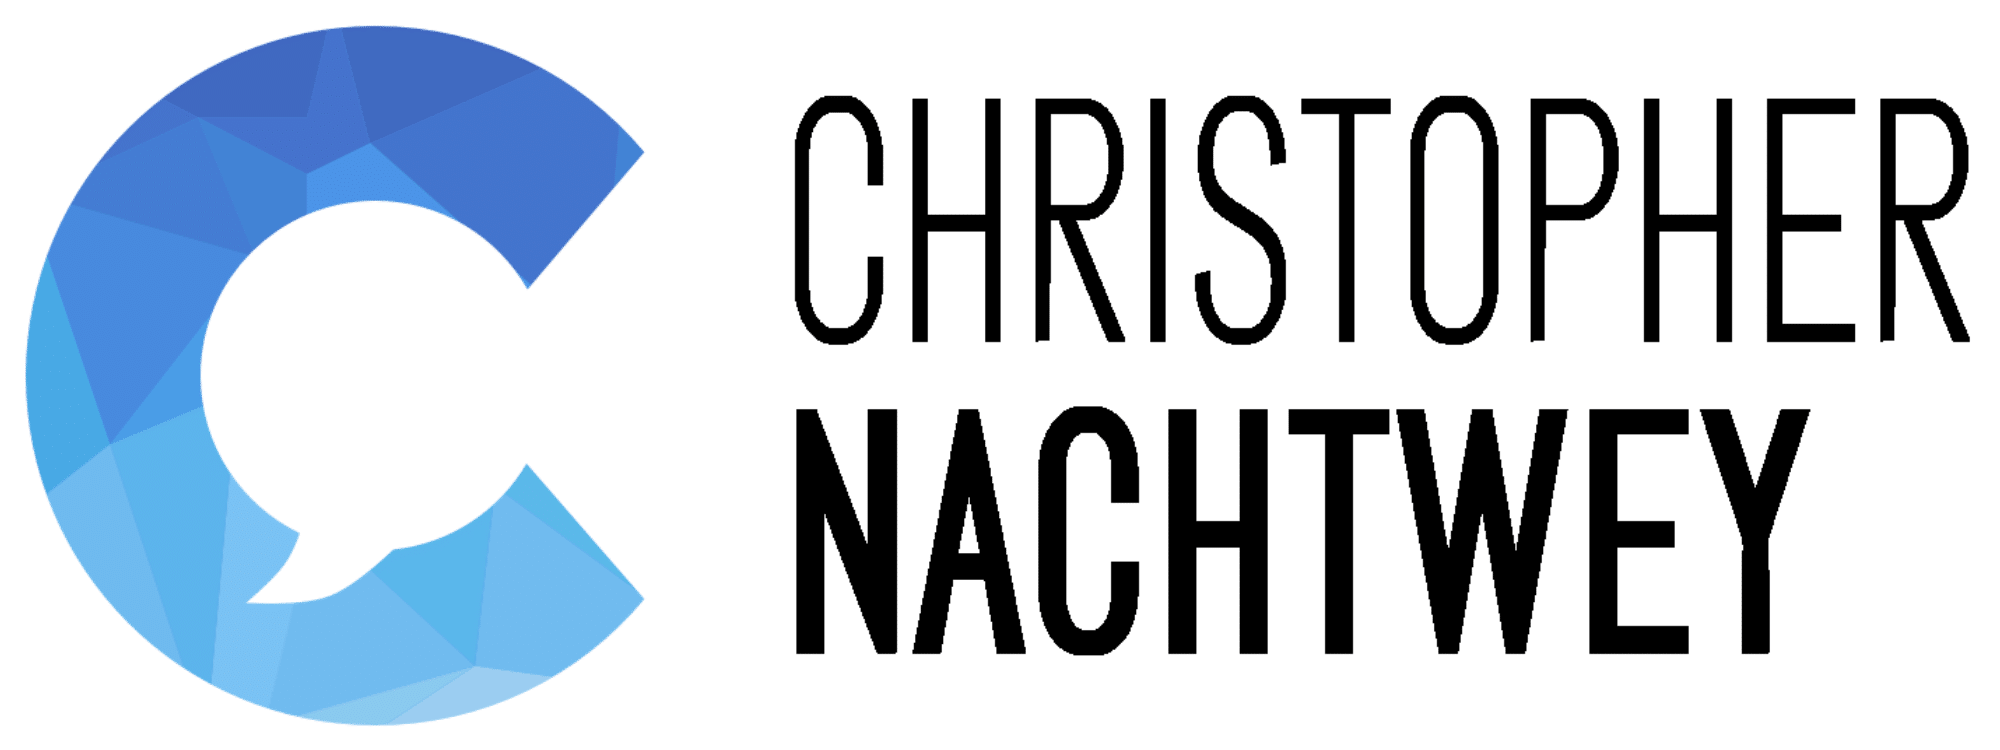 Christopher Nachtwey